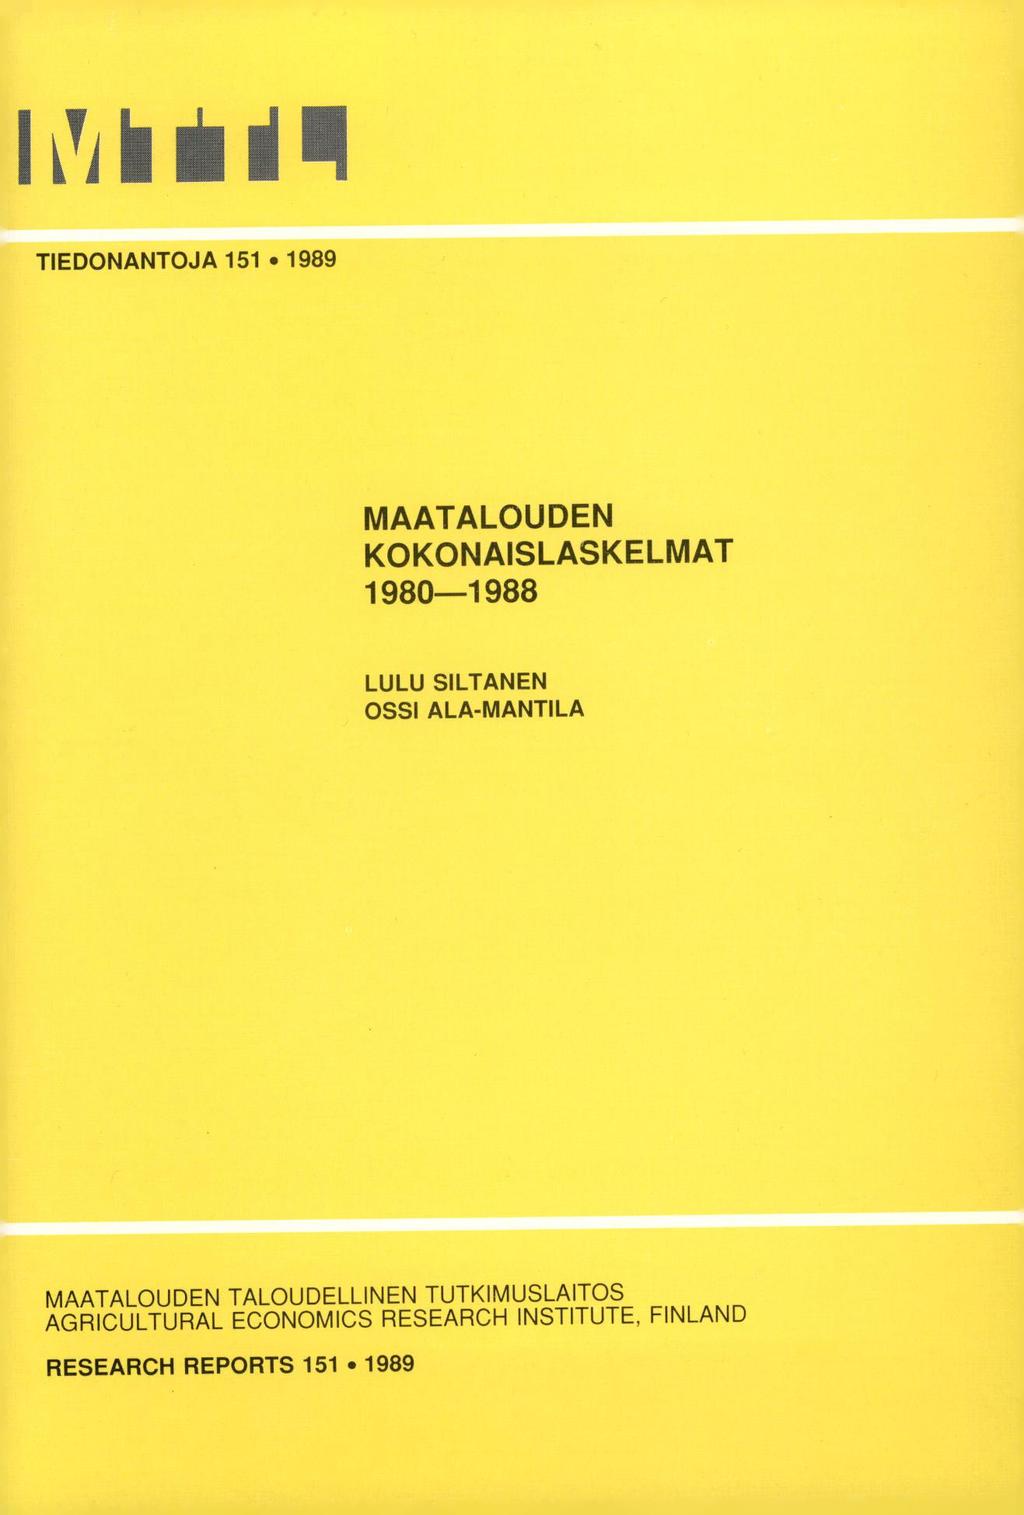 IMiiill TIEDONANTOJA 151 1989 MAATALOUDEN KOKONAISLASKELMAT 198-1988 LULU SILTANEN OSSI ALA-MANTILA